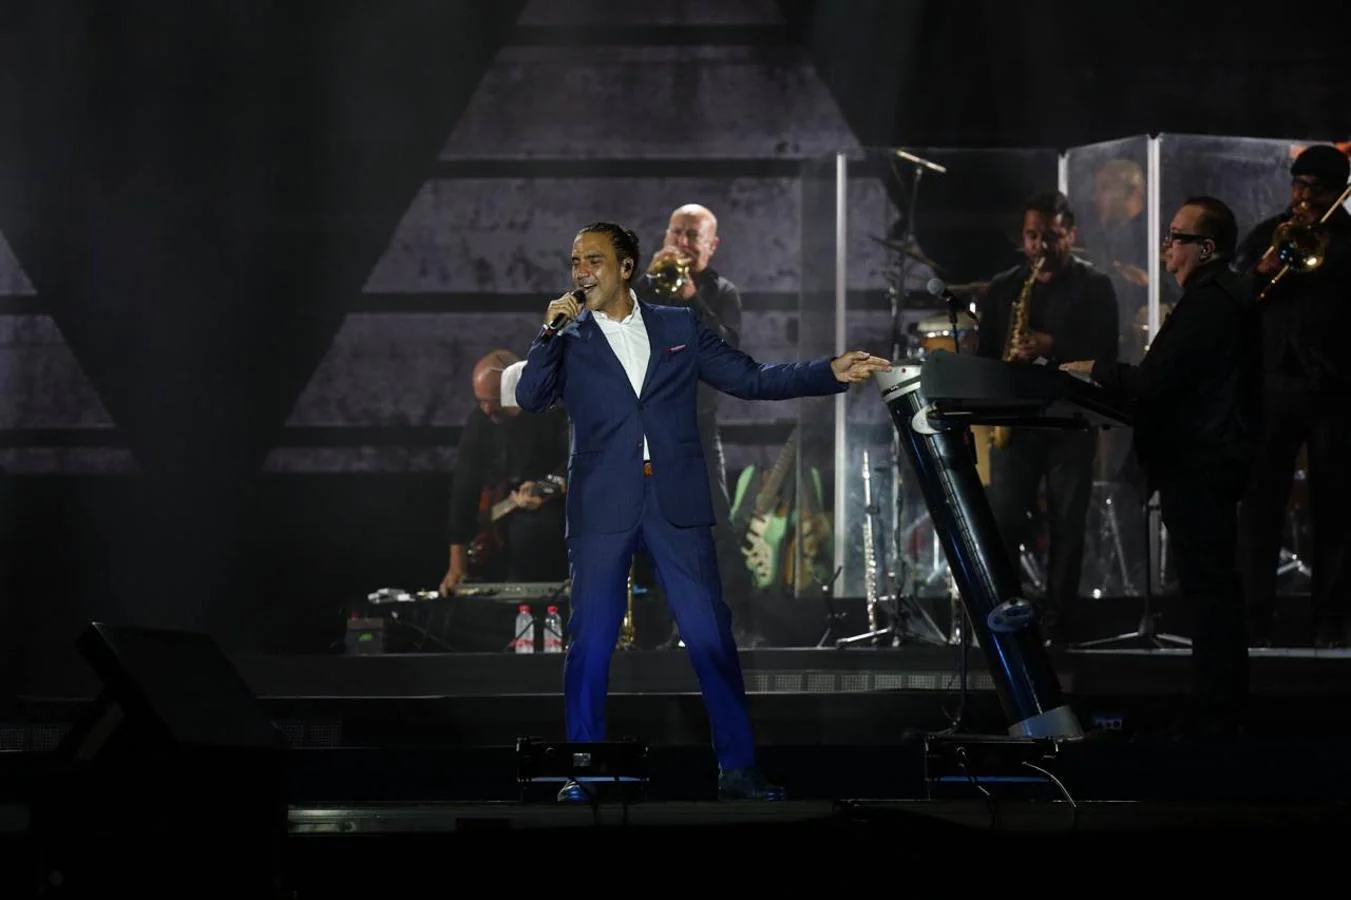 El cantante mexicano actuó anoche en la Maria Sur. El artista presentó su disco 'Rompiendo Fronteras' ante el público valenciano, justo una semana después de que el mismo escenario recibiera a Luis Miguel.